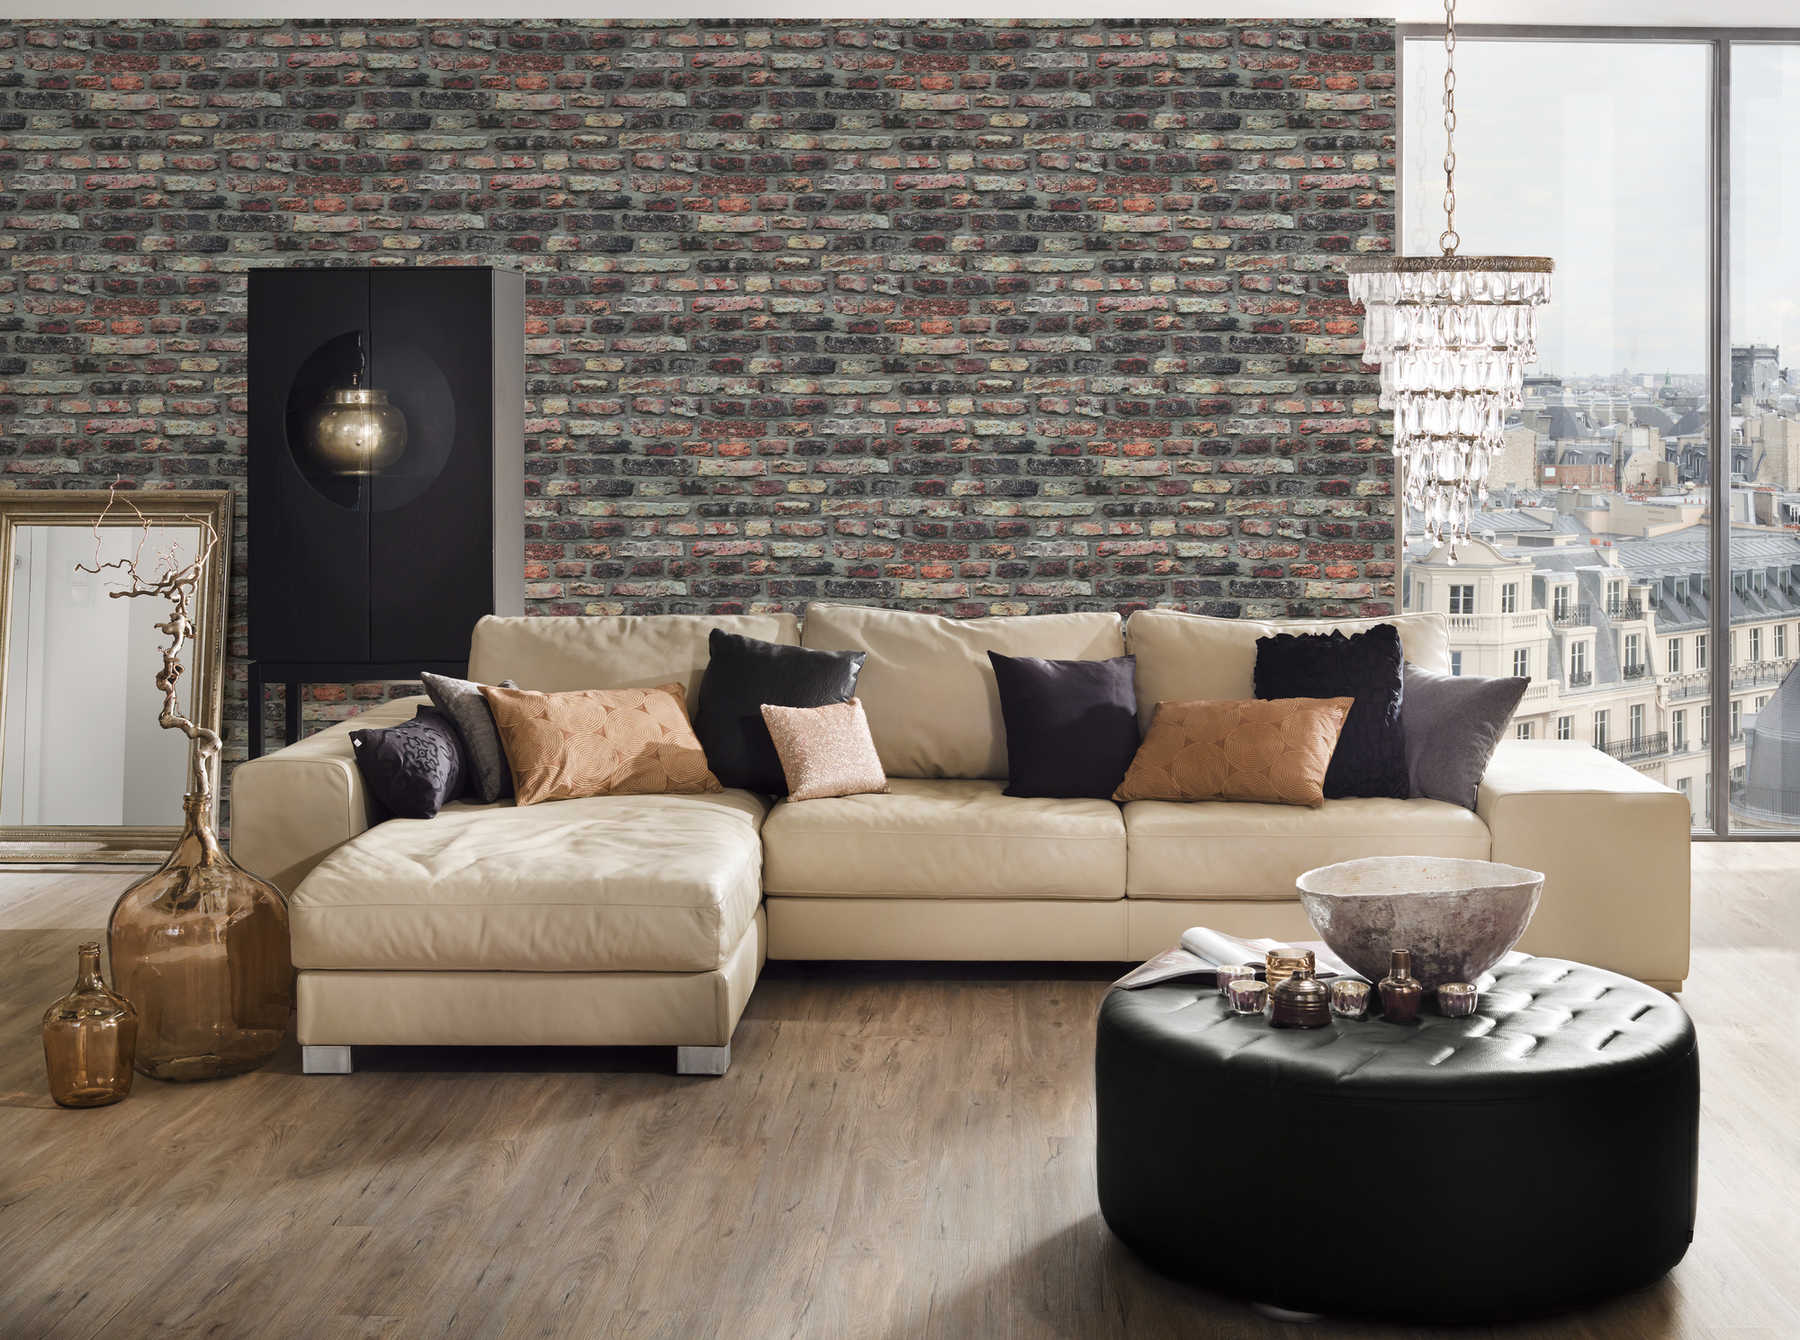             Stone wallpaper rustic brickwork in industrial style - brown, grey, beige
        